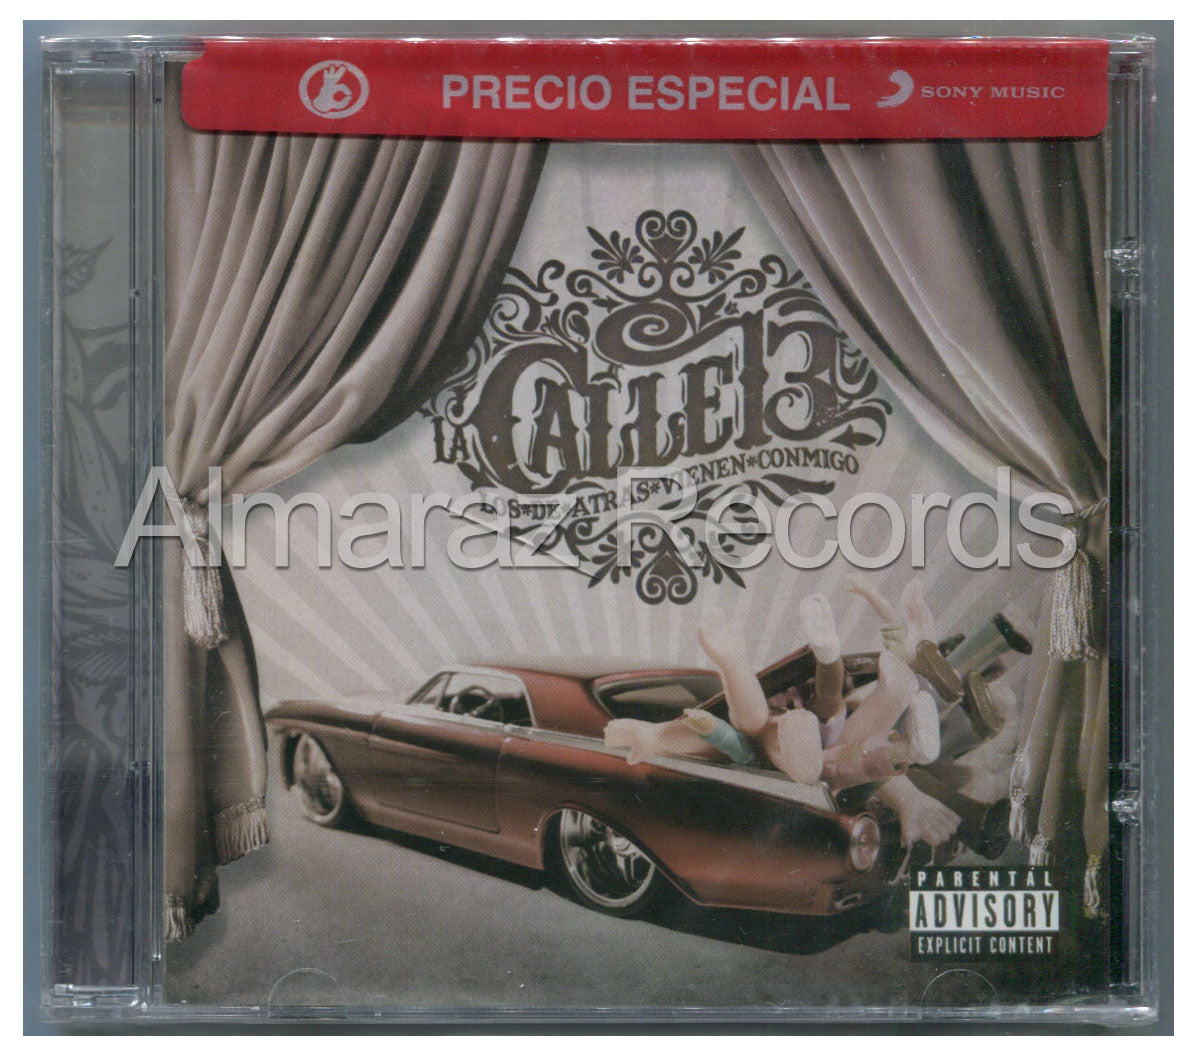 Calle 13 Los De Atras Vienen Conmigo CD